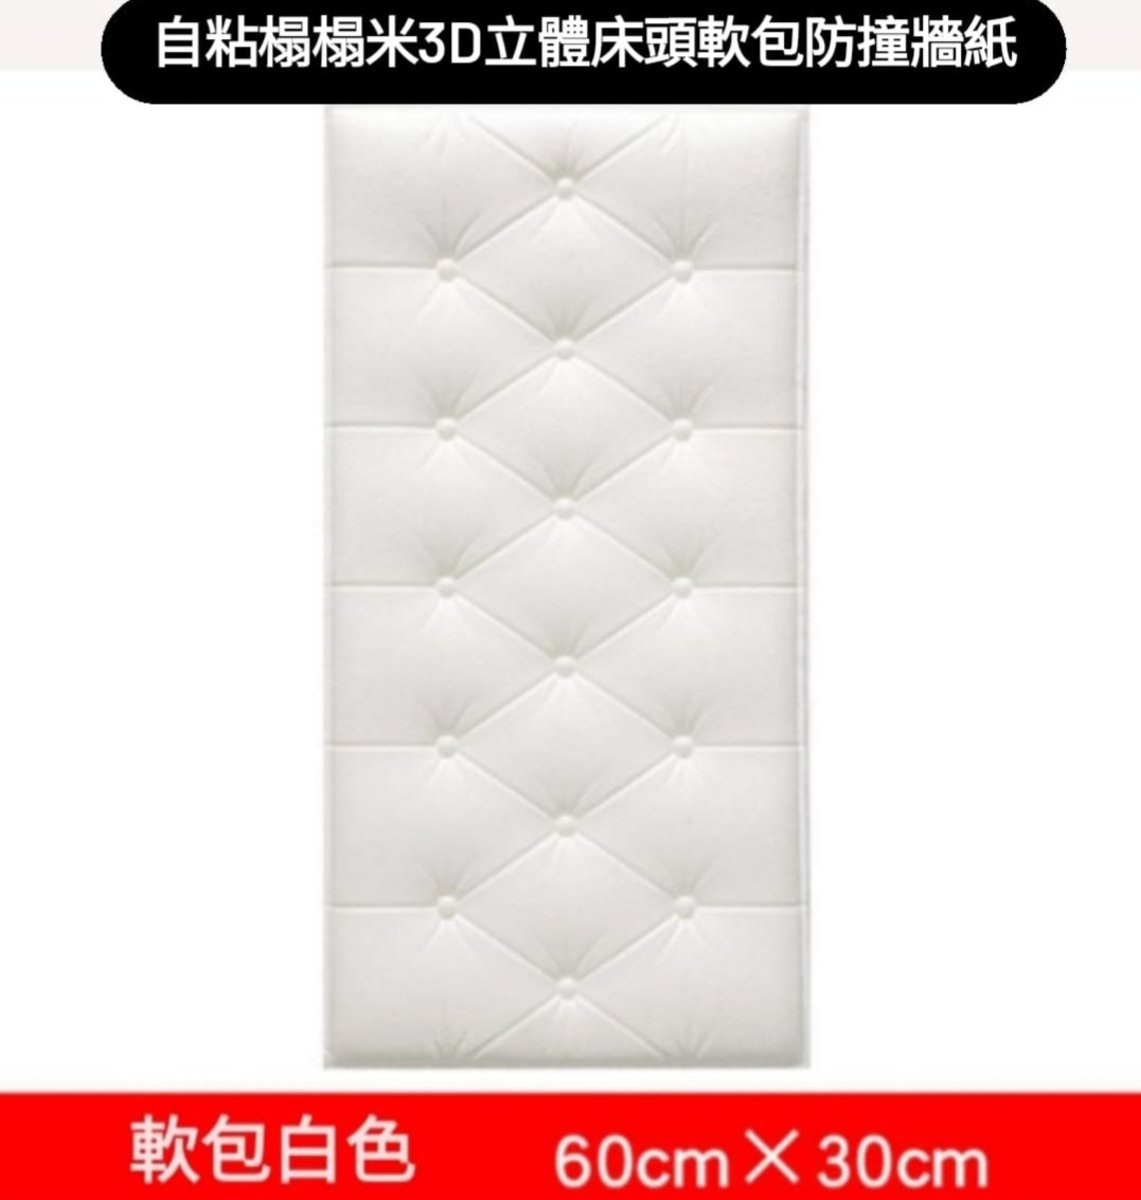 【5件裝】自粘3D立體牆貼  3D牆紙 靠床頭防撞軟包牆貼 軟包背景牆 多功能隔音防撞牆紙 牆墊 防水加厚護牆板 - 白色